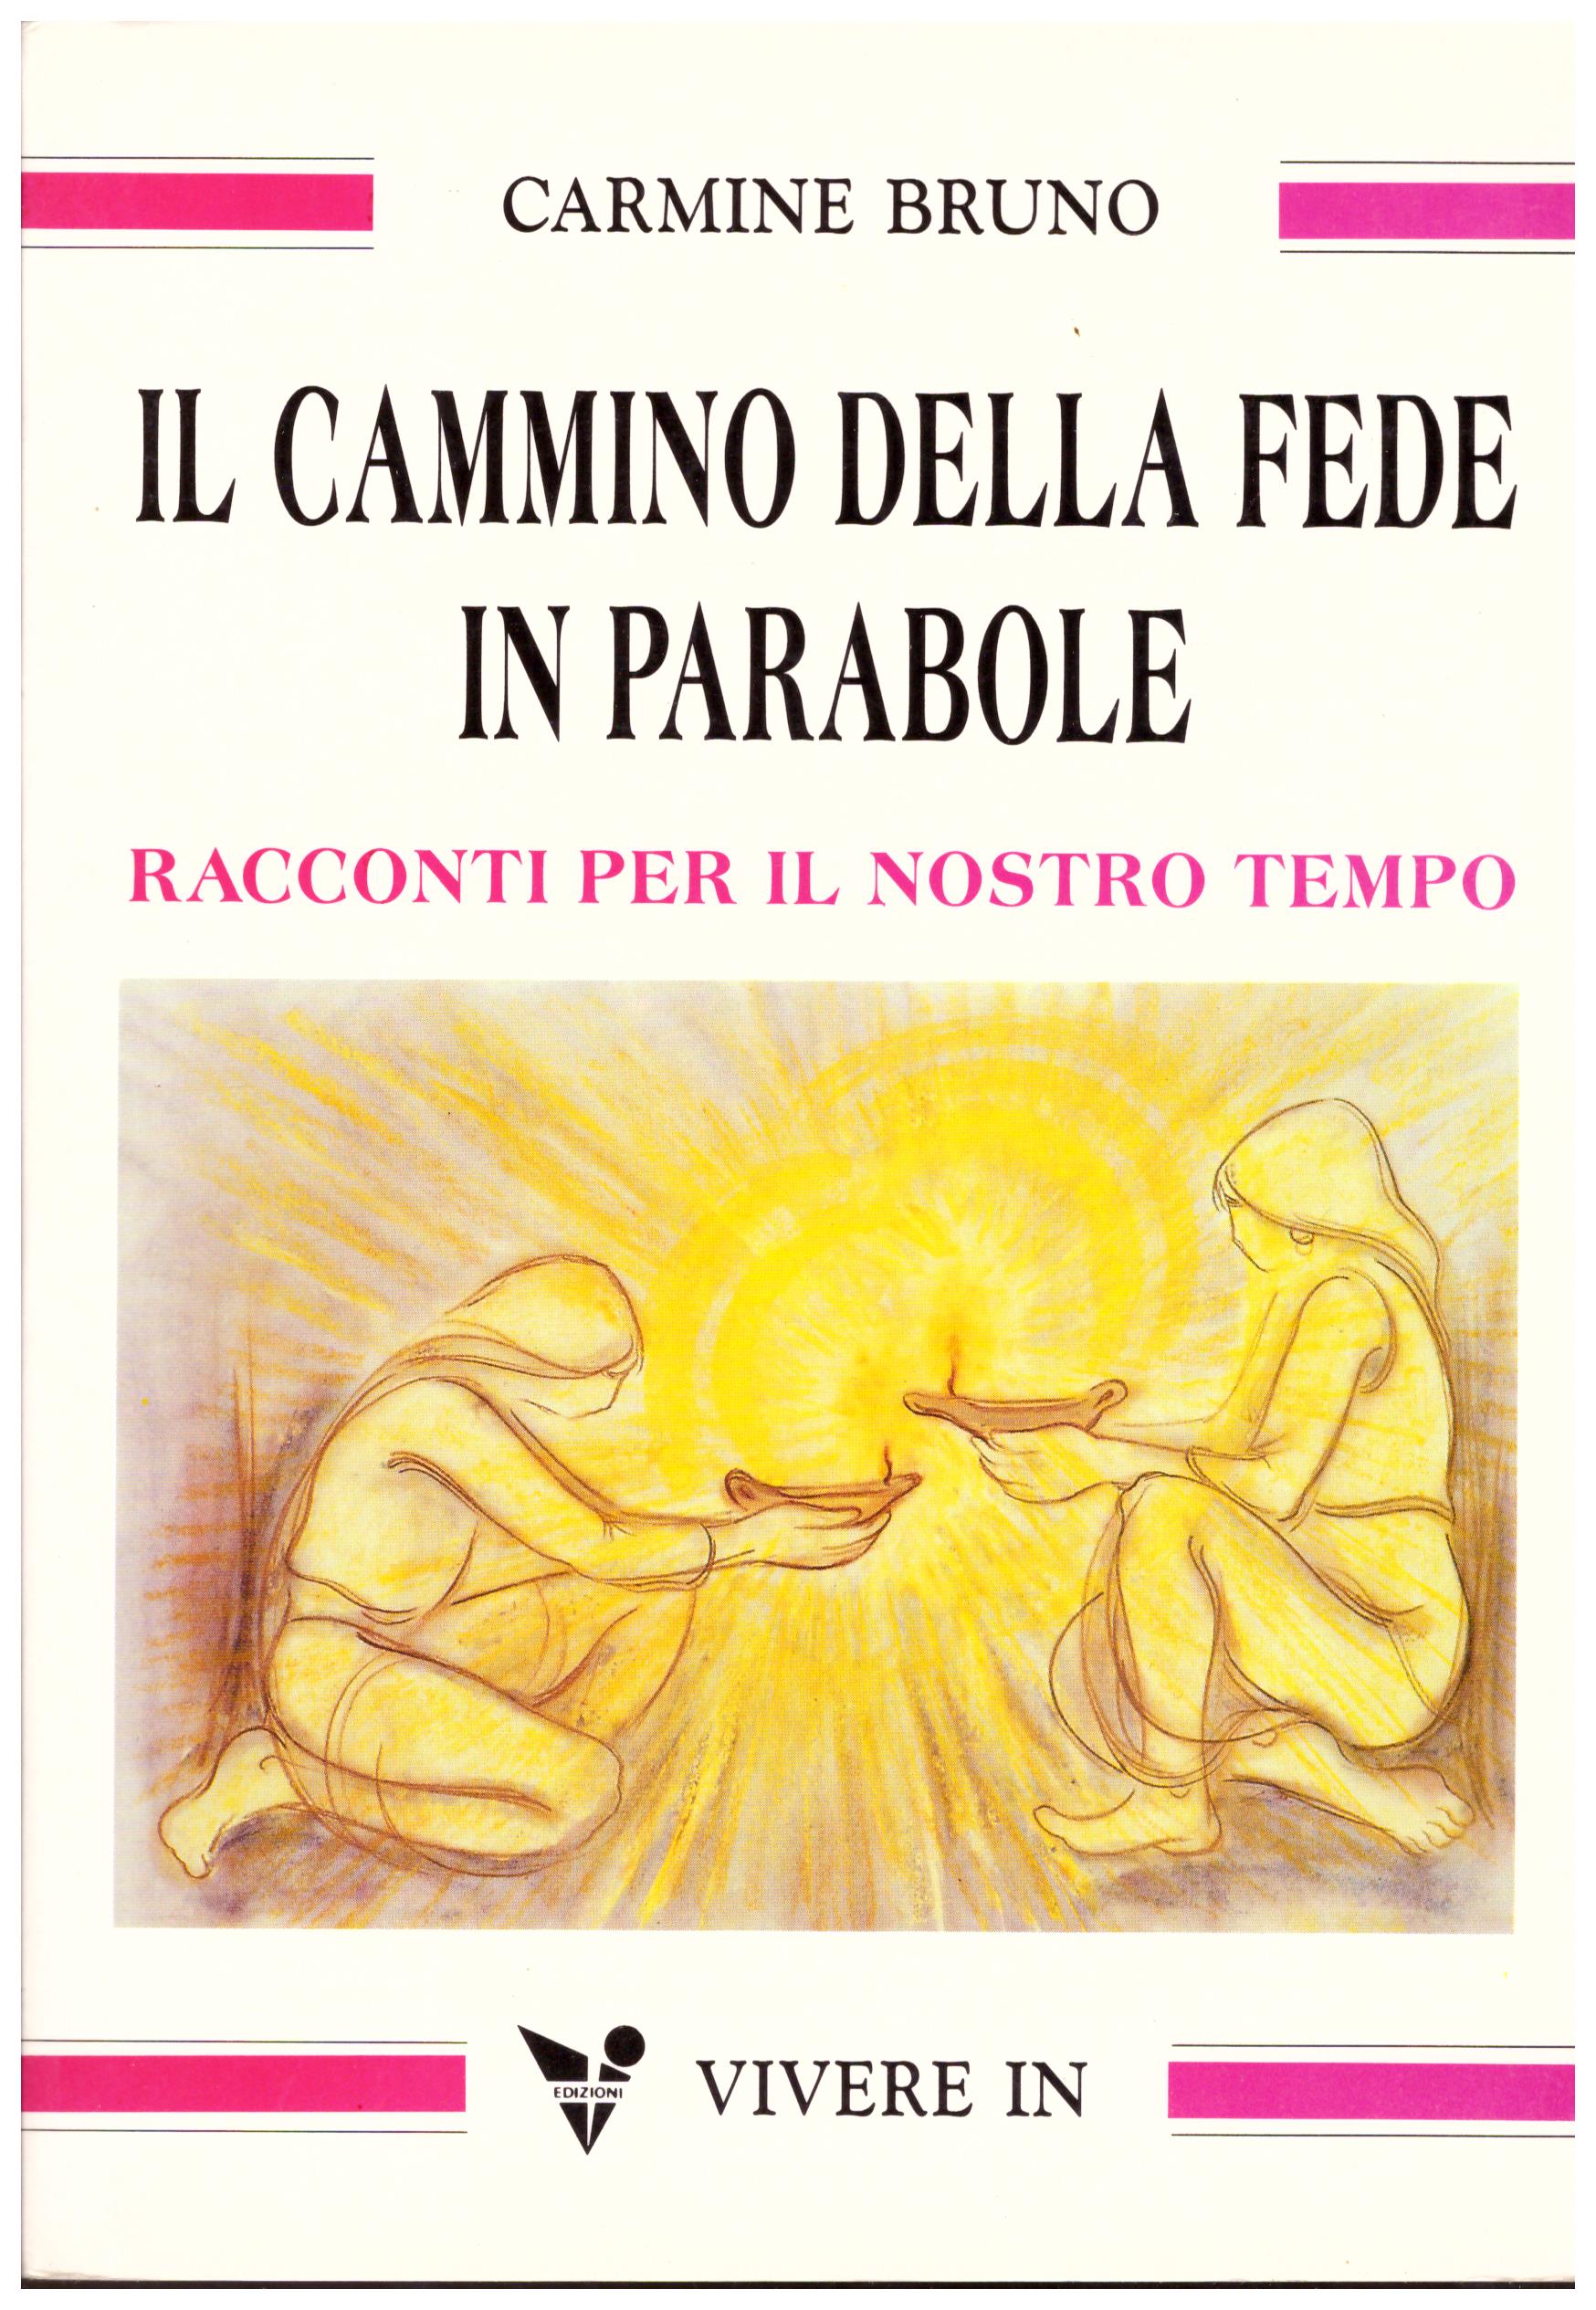 Titolo: Il cammino della fede Autore: Carmine Bruno Editore: vivere in, 1992